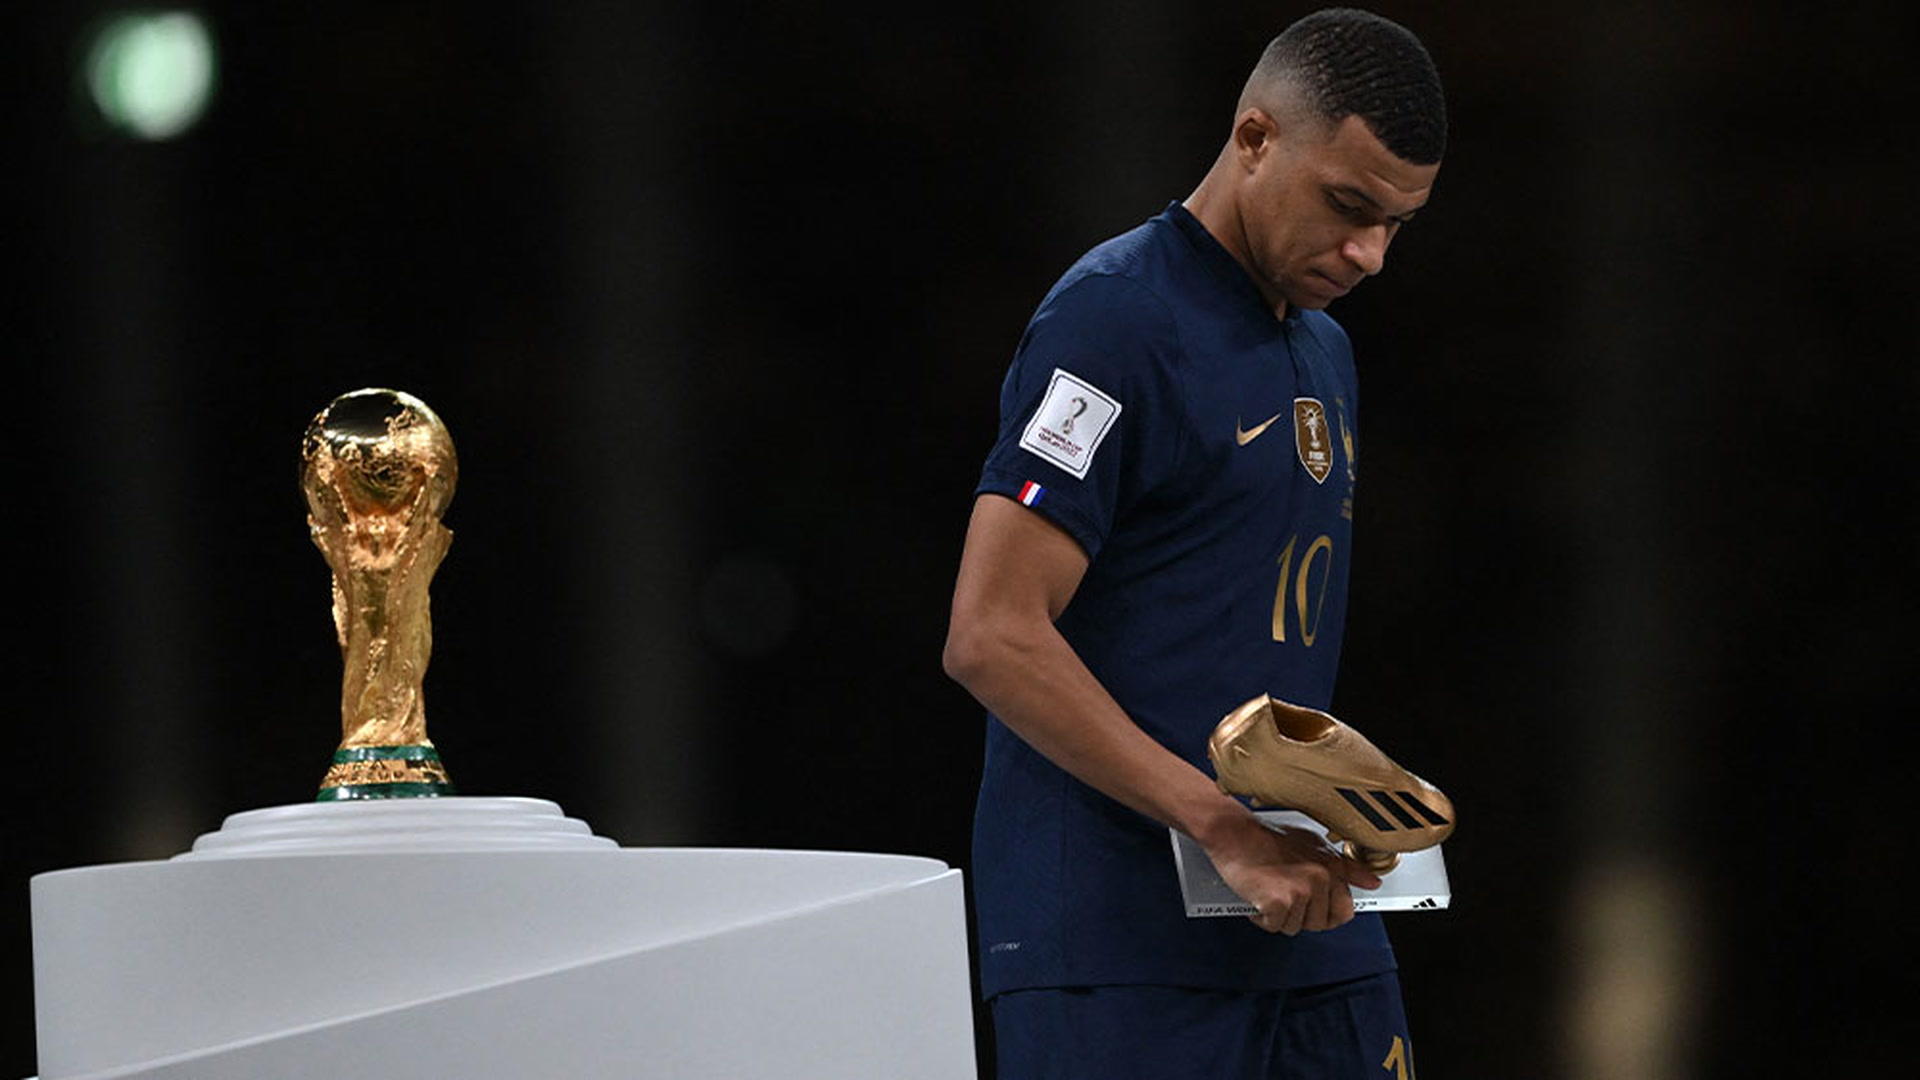 Kylian Mbappé wins Golden Boot at World Cup 2022, Sport